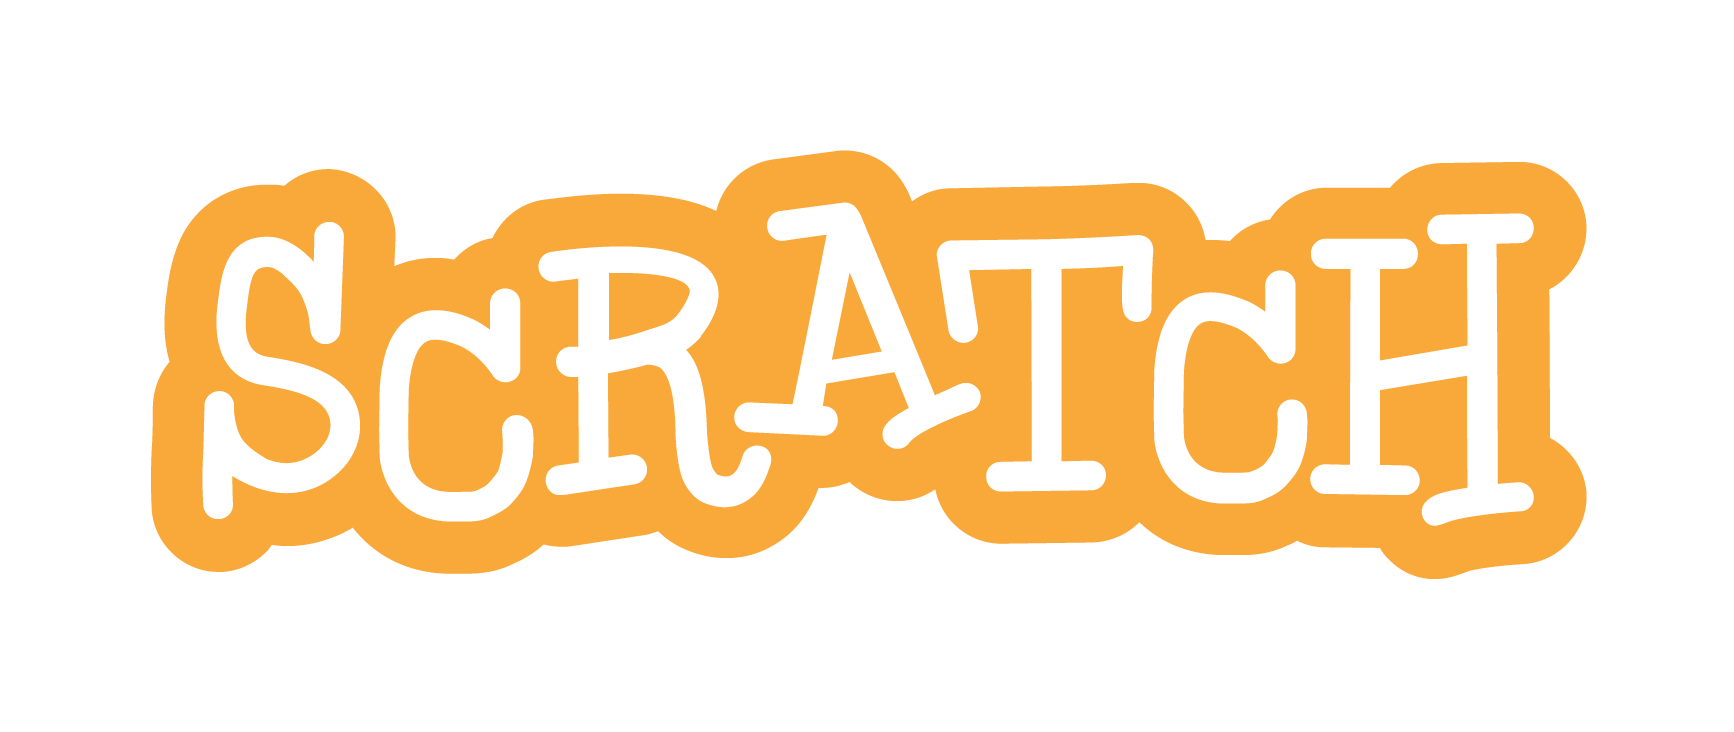 Scratch Logo - Scratch Logo Png (+)